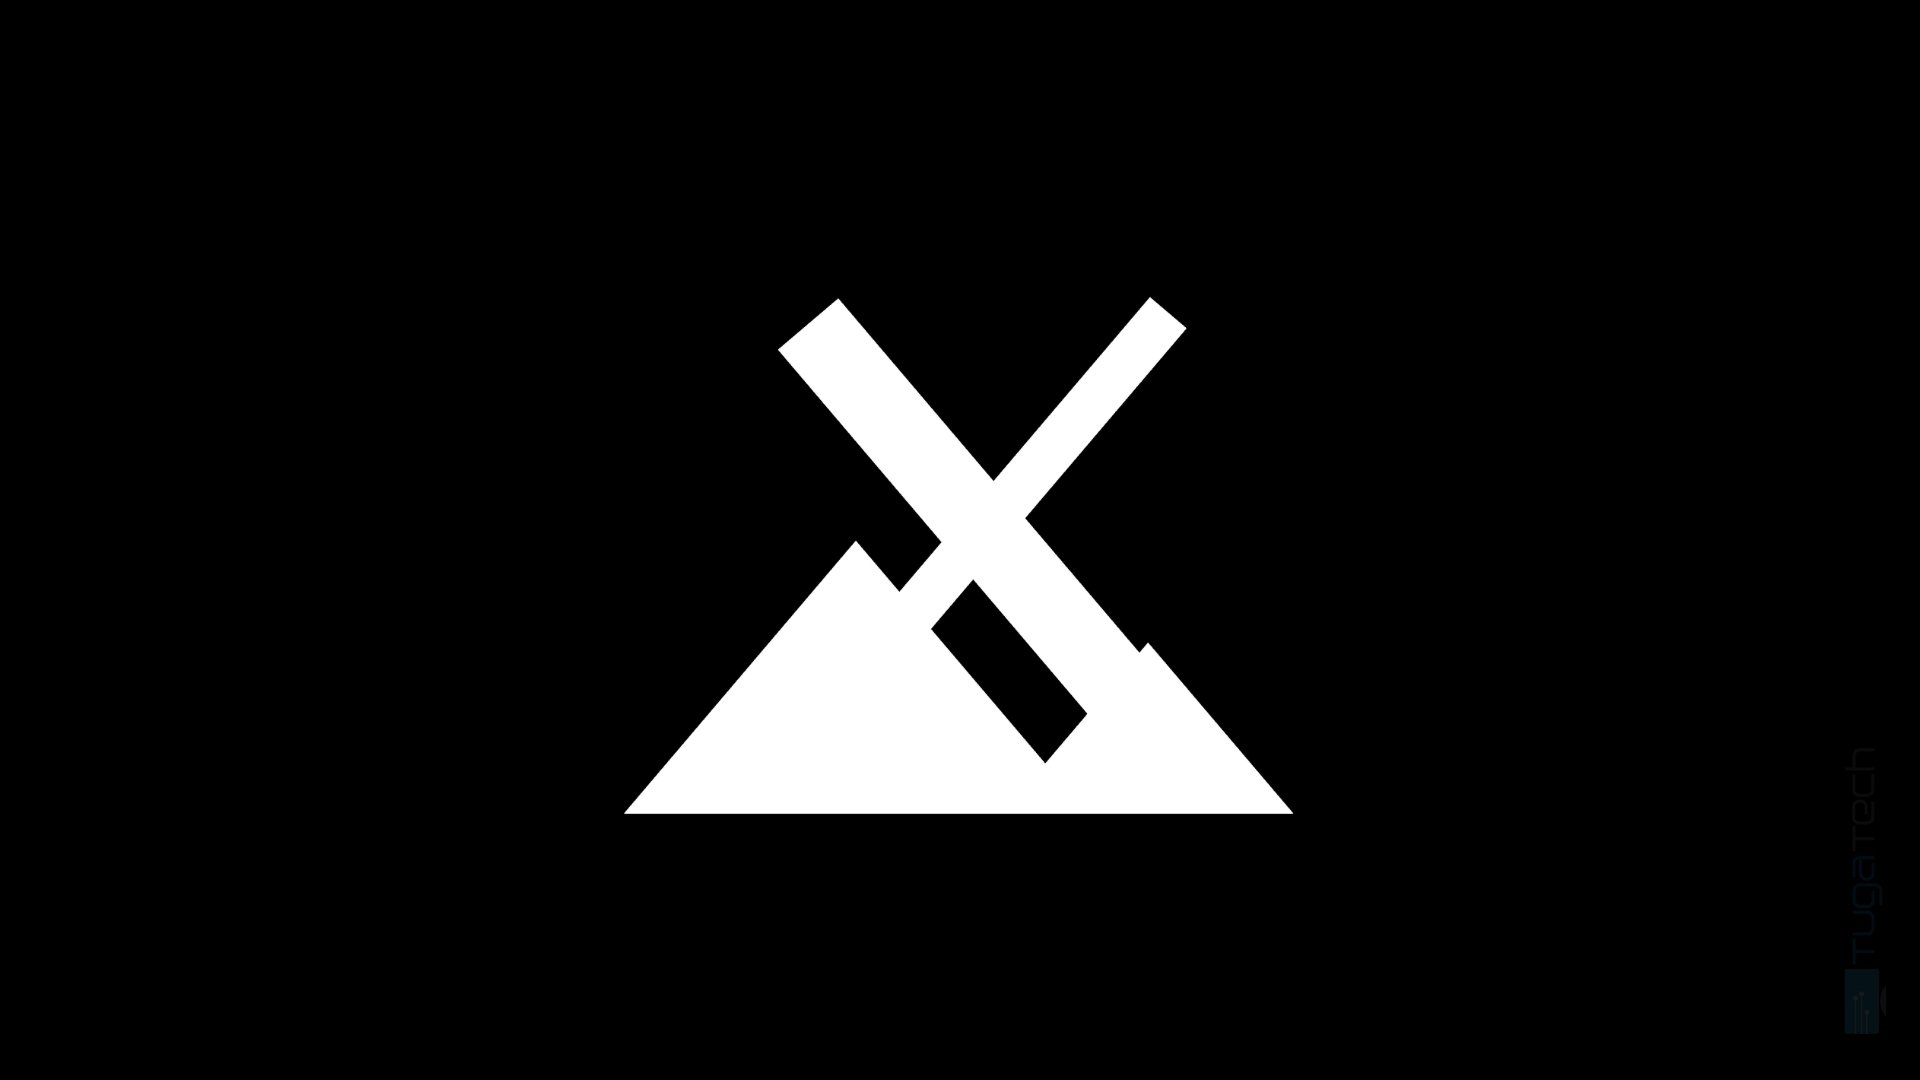 MX Linux logo